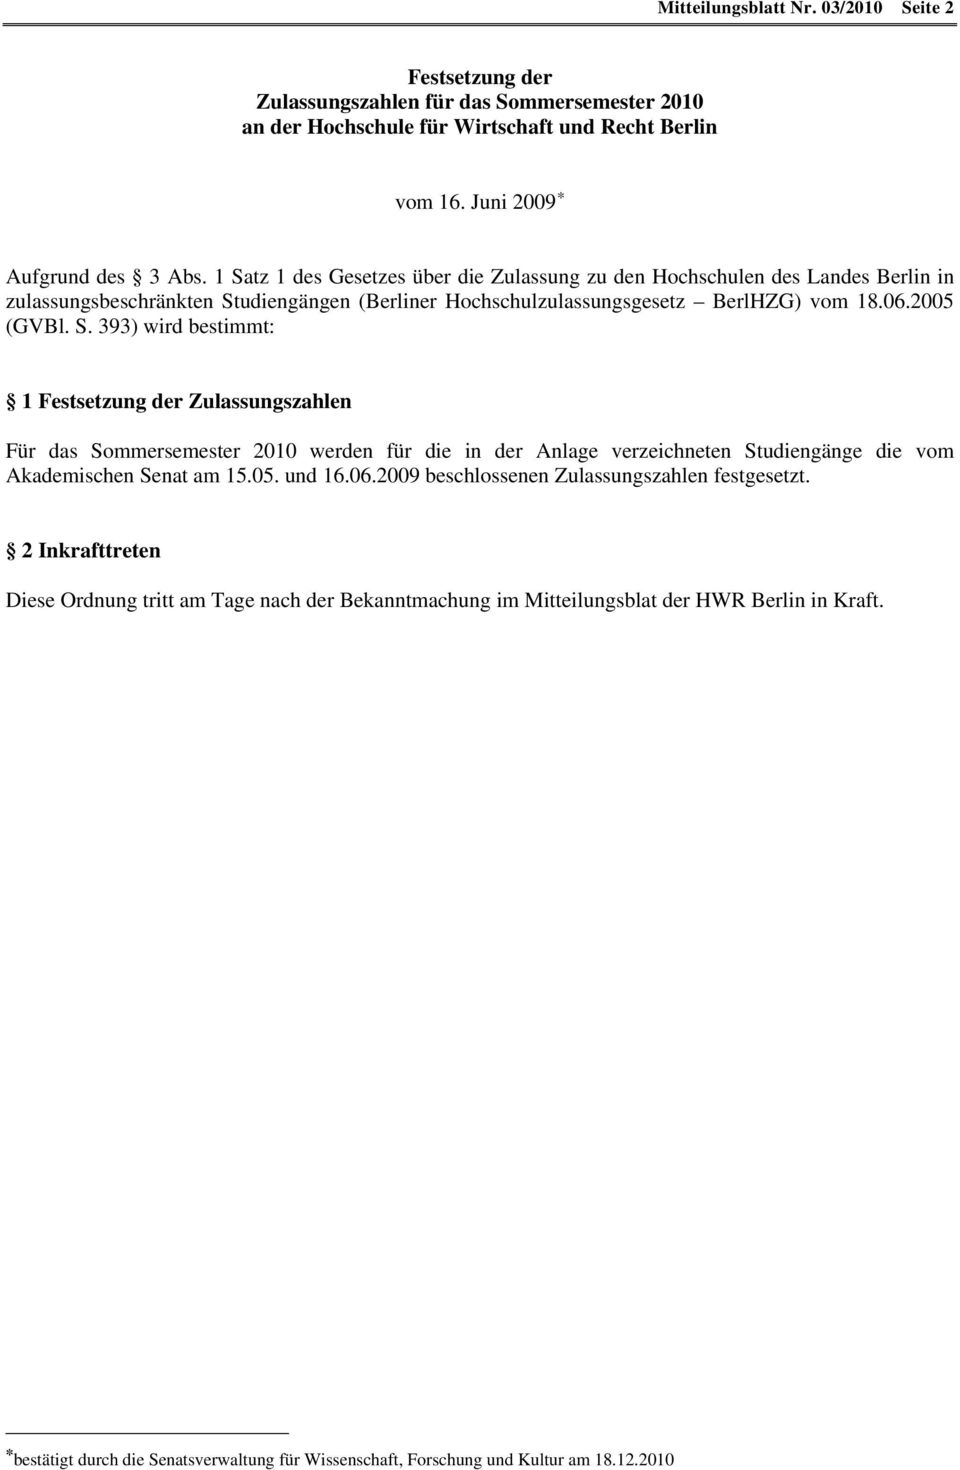 5. und 16.6.29 beschlossenen Zulassungszahlen festgesetzt. 2 Inkrafttreten Diese Ordnung tritt am Tage nach der Bekanntmachung im Mitteilungsblat der HWR Berlin in Kraft.